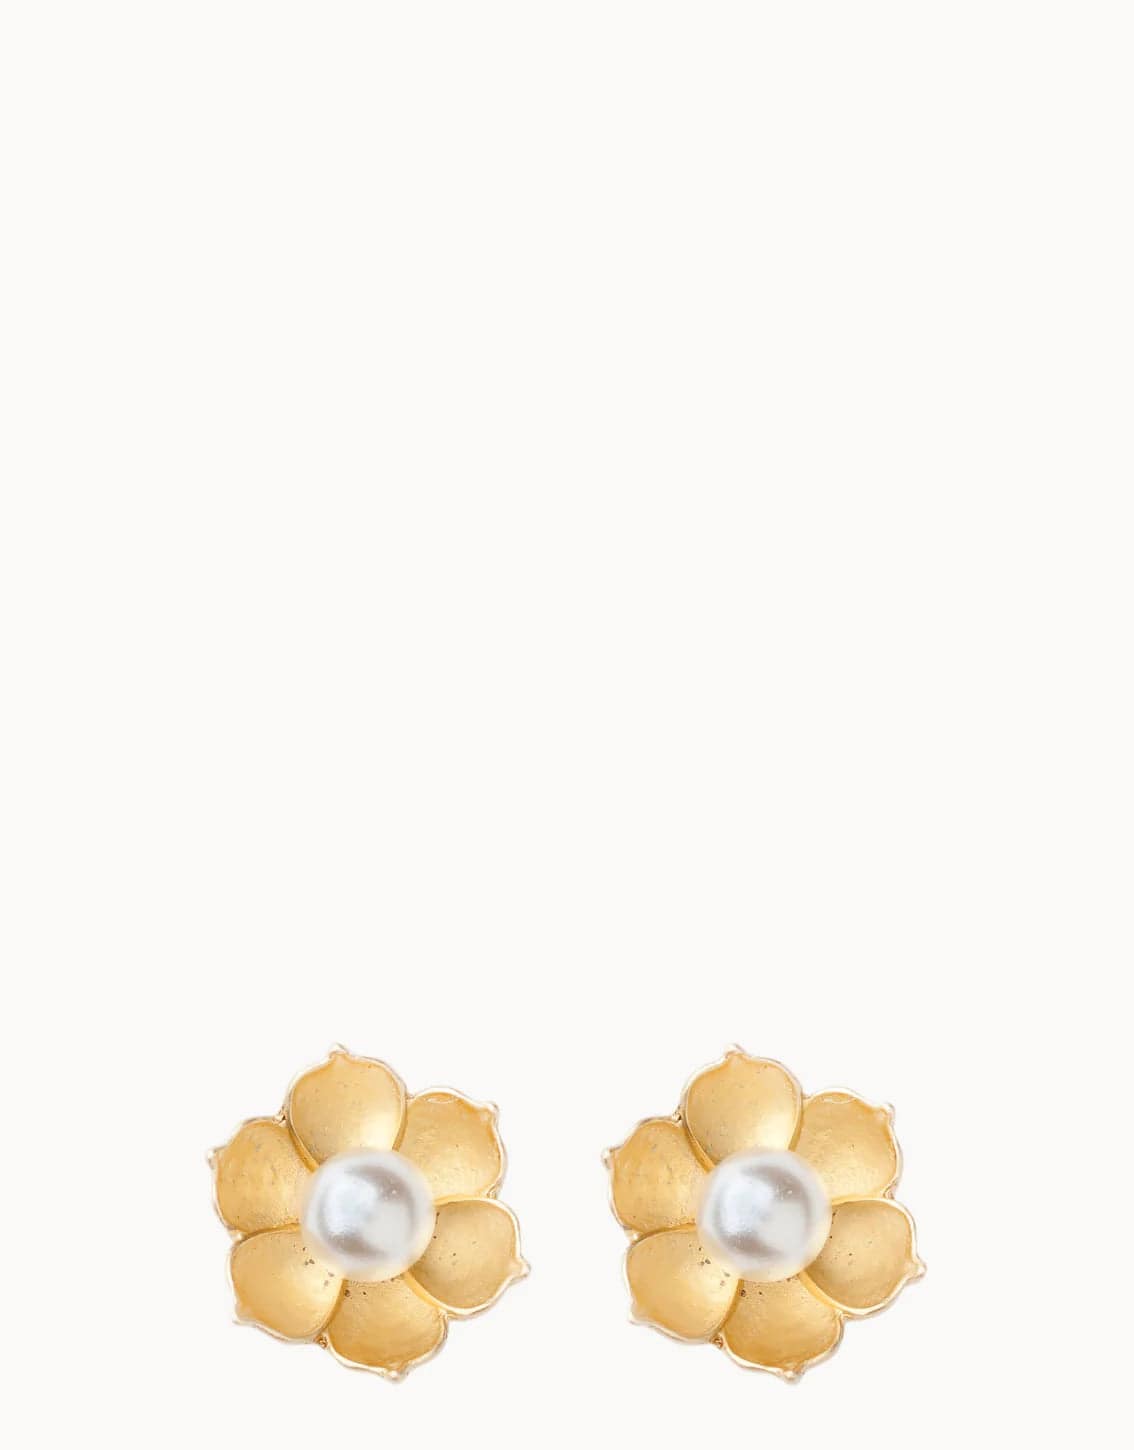 Spartina - Sea La Vie Bloom Stud Earrings - Findlay Rowe Designs